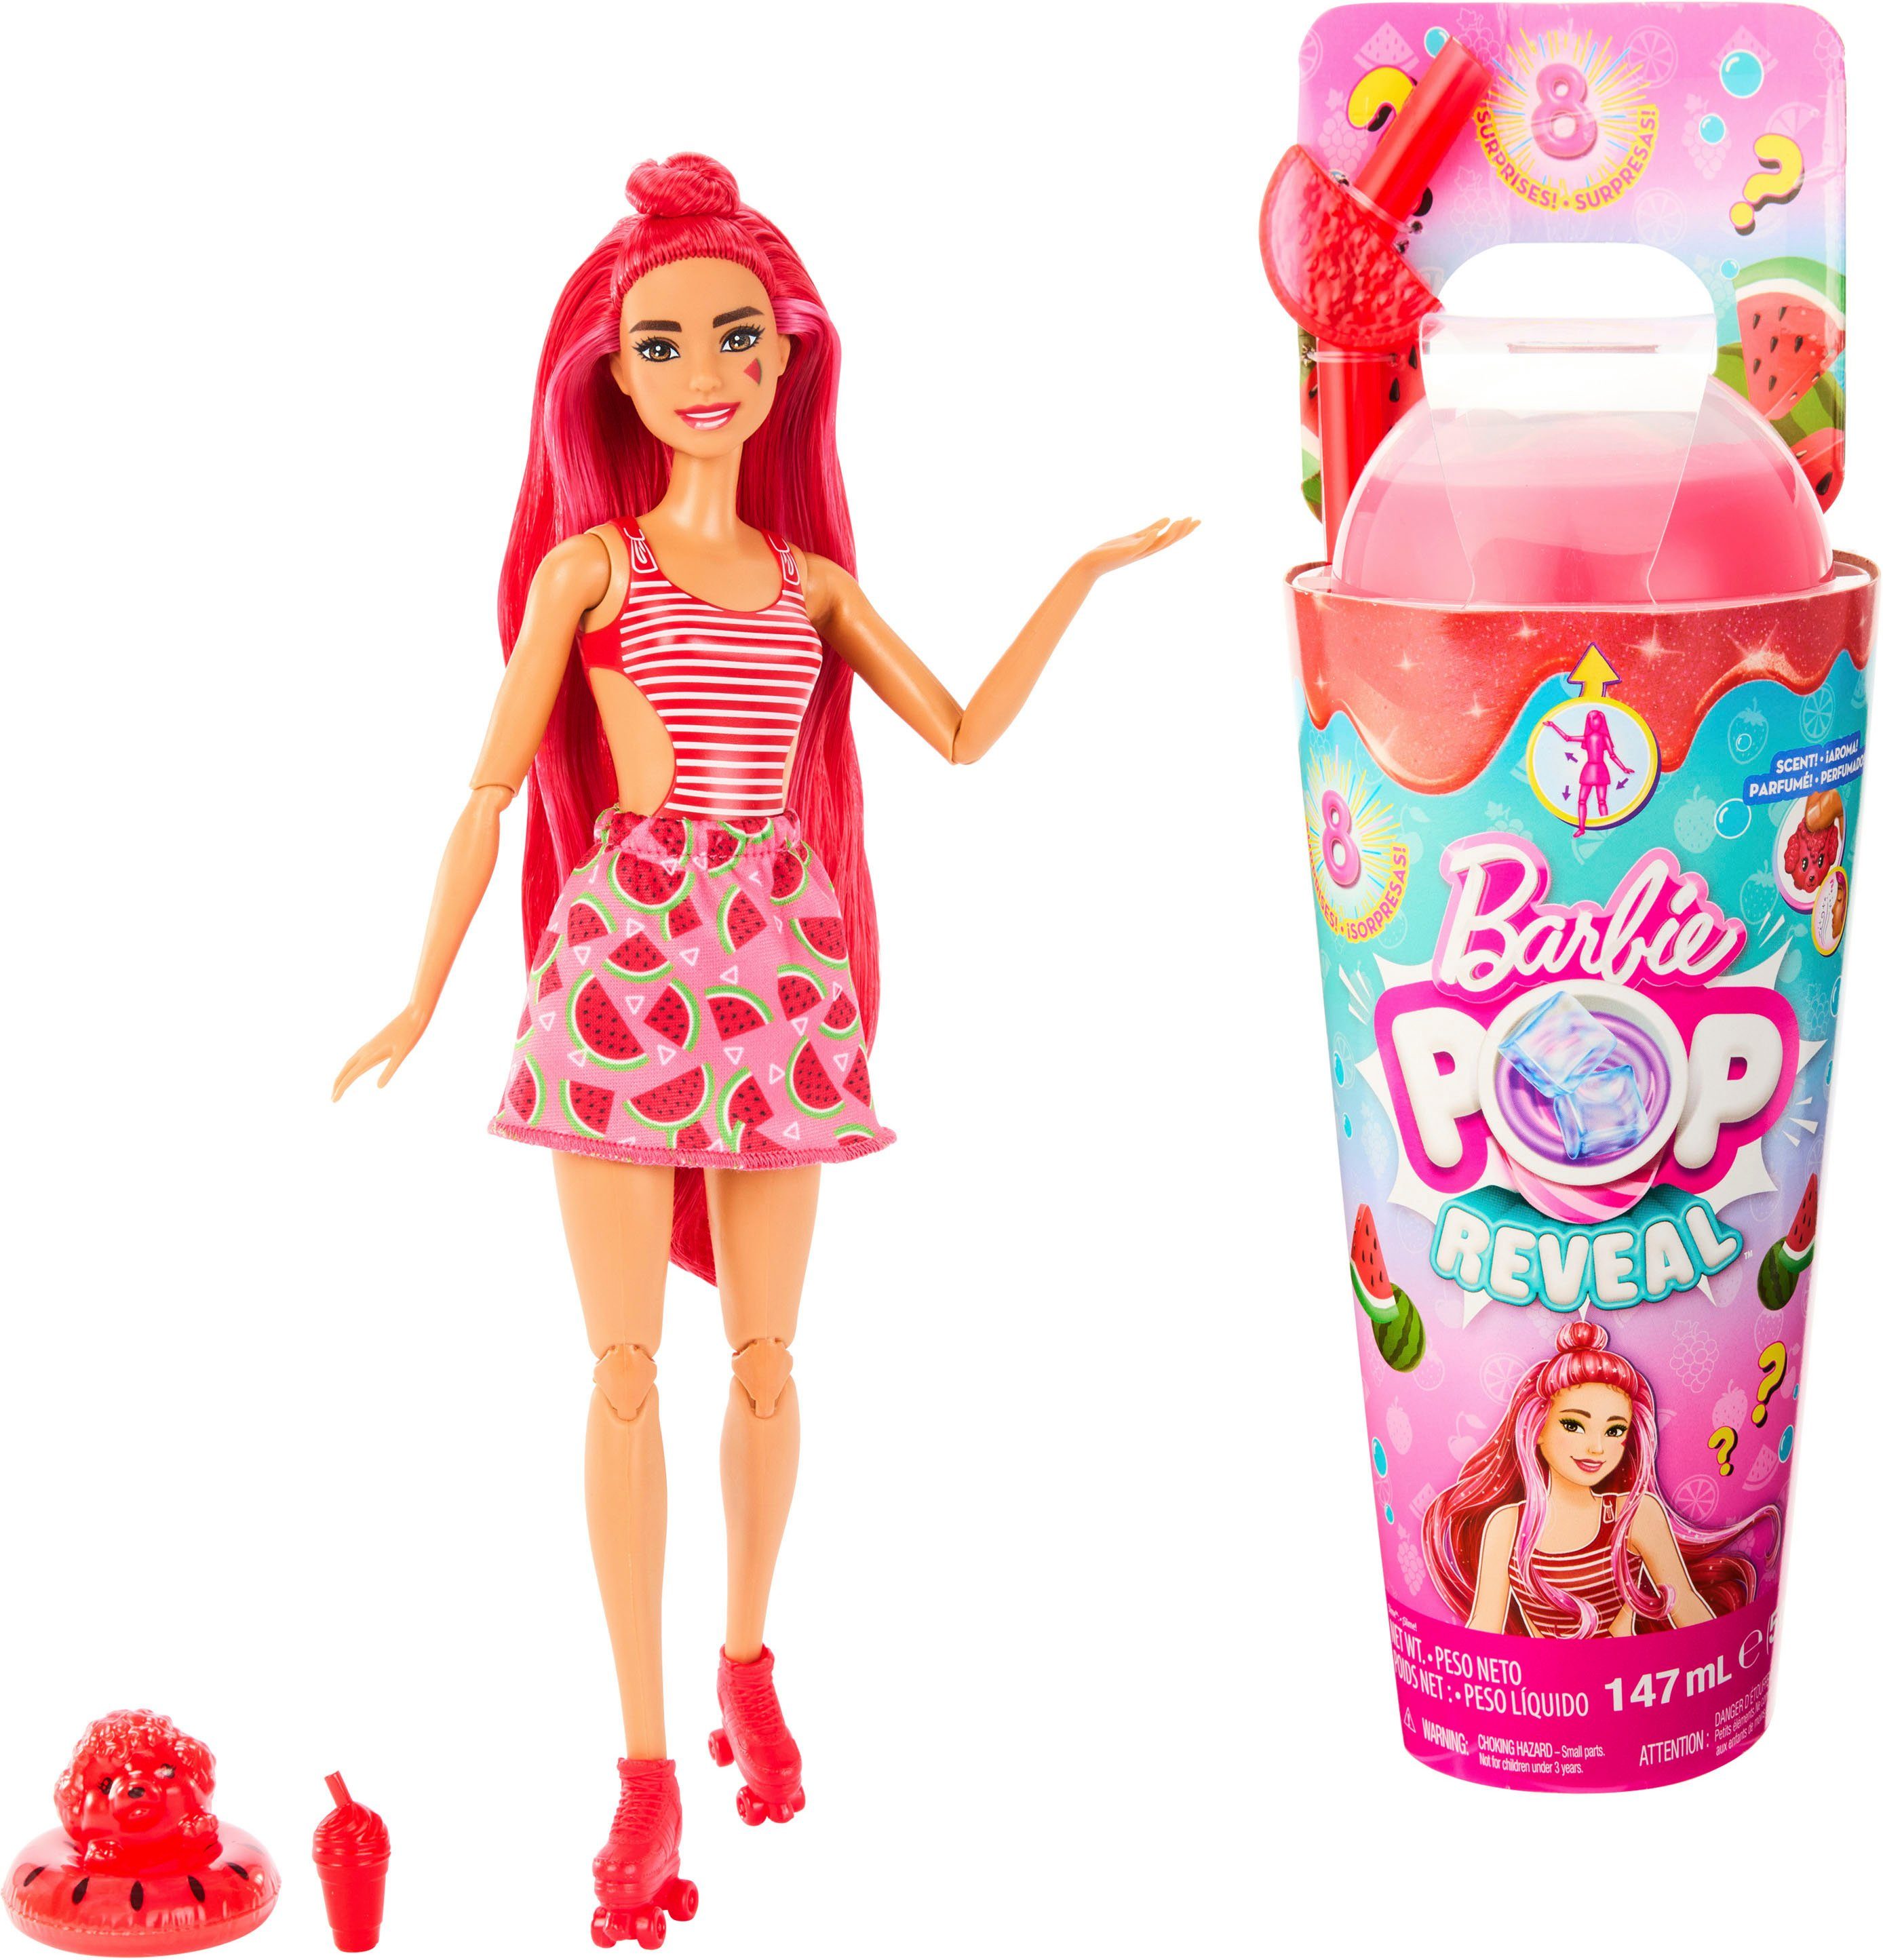 Barbie Anziehpuppe Pop! Reveal, Fruit, Wassermelonendesign, mit Farbwechsel | Anziehpuppen